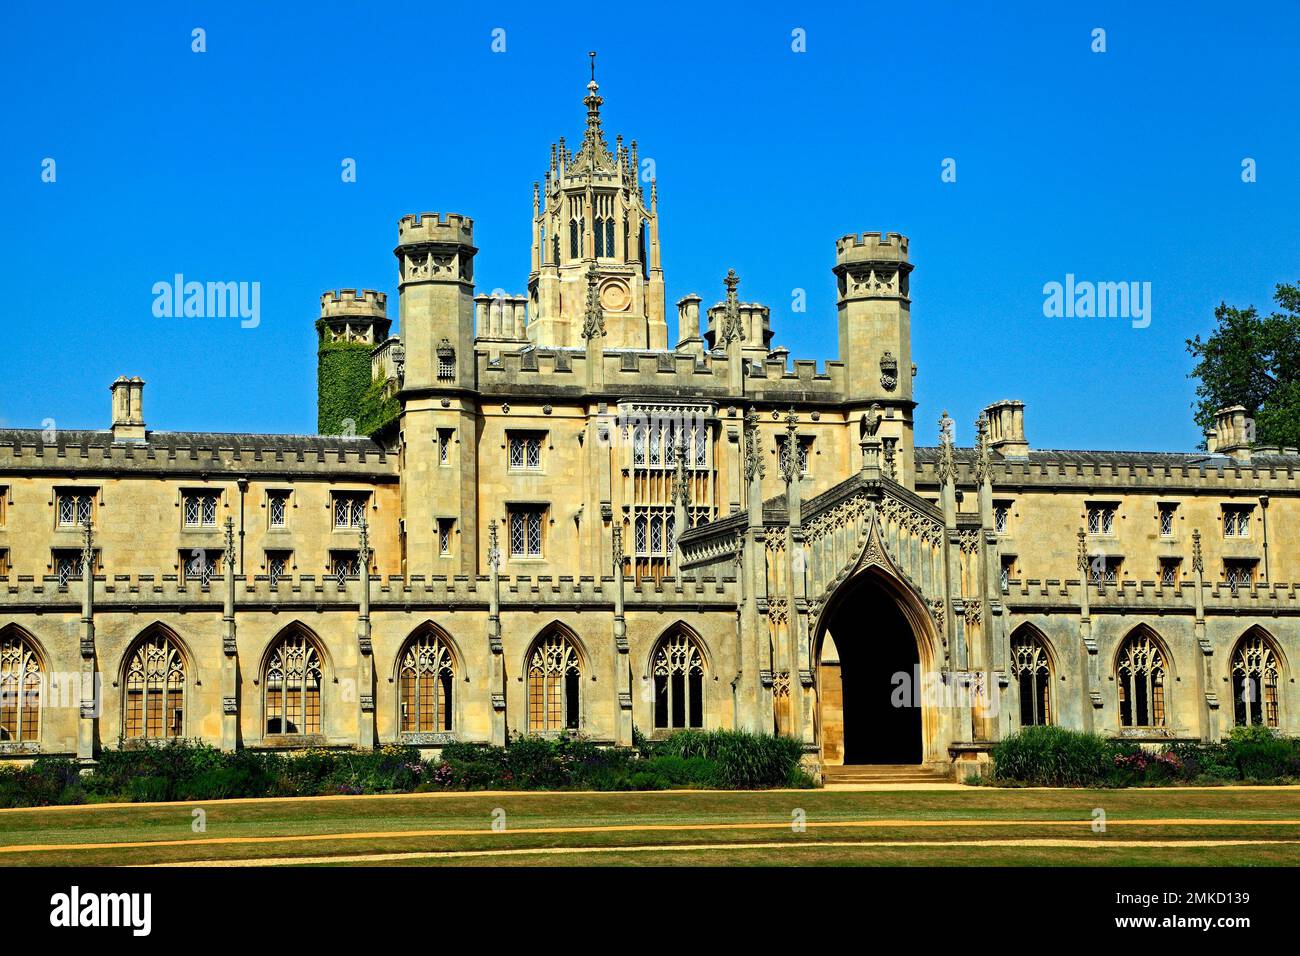 St. Johns College, Cambridge University, Cambridgeshire, England, UK Stock Photo